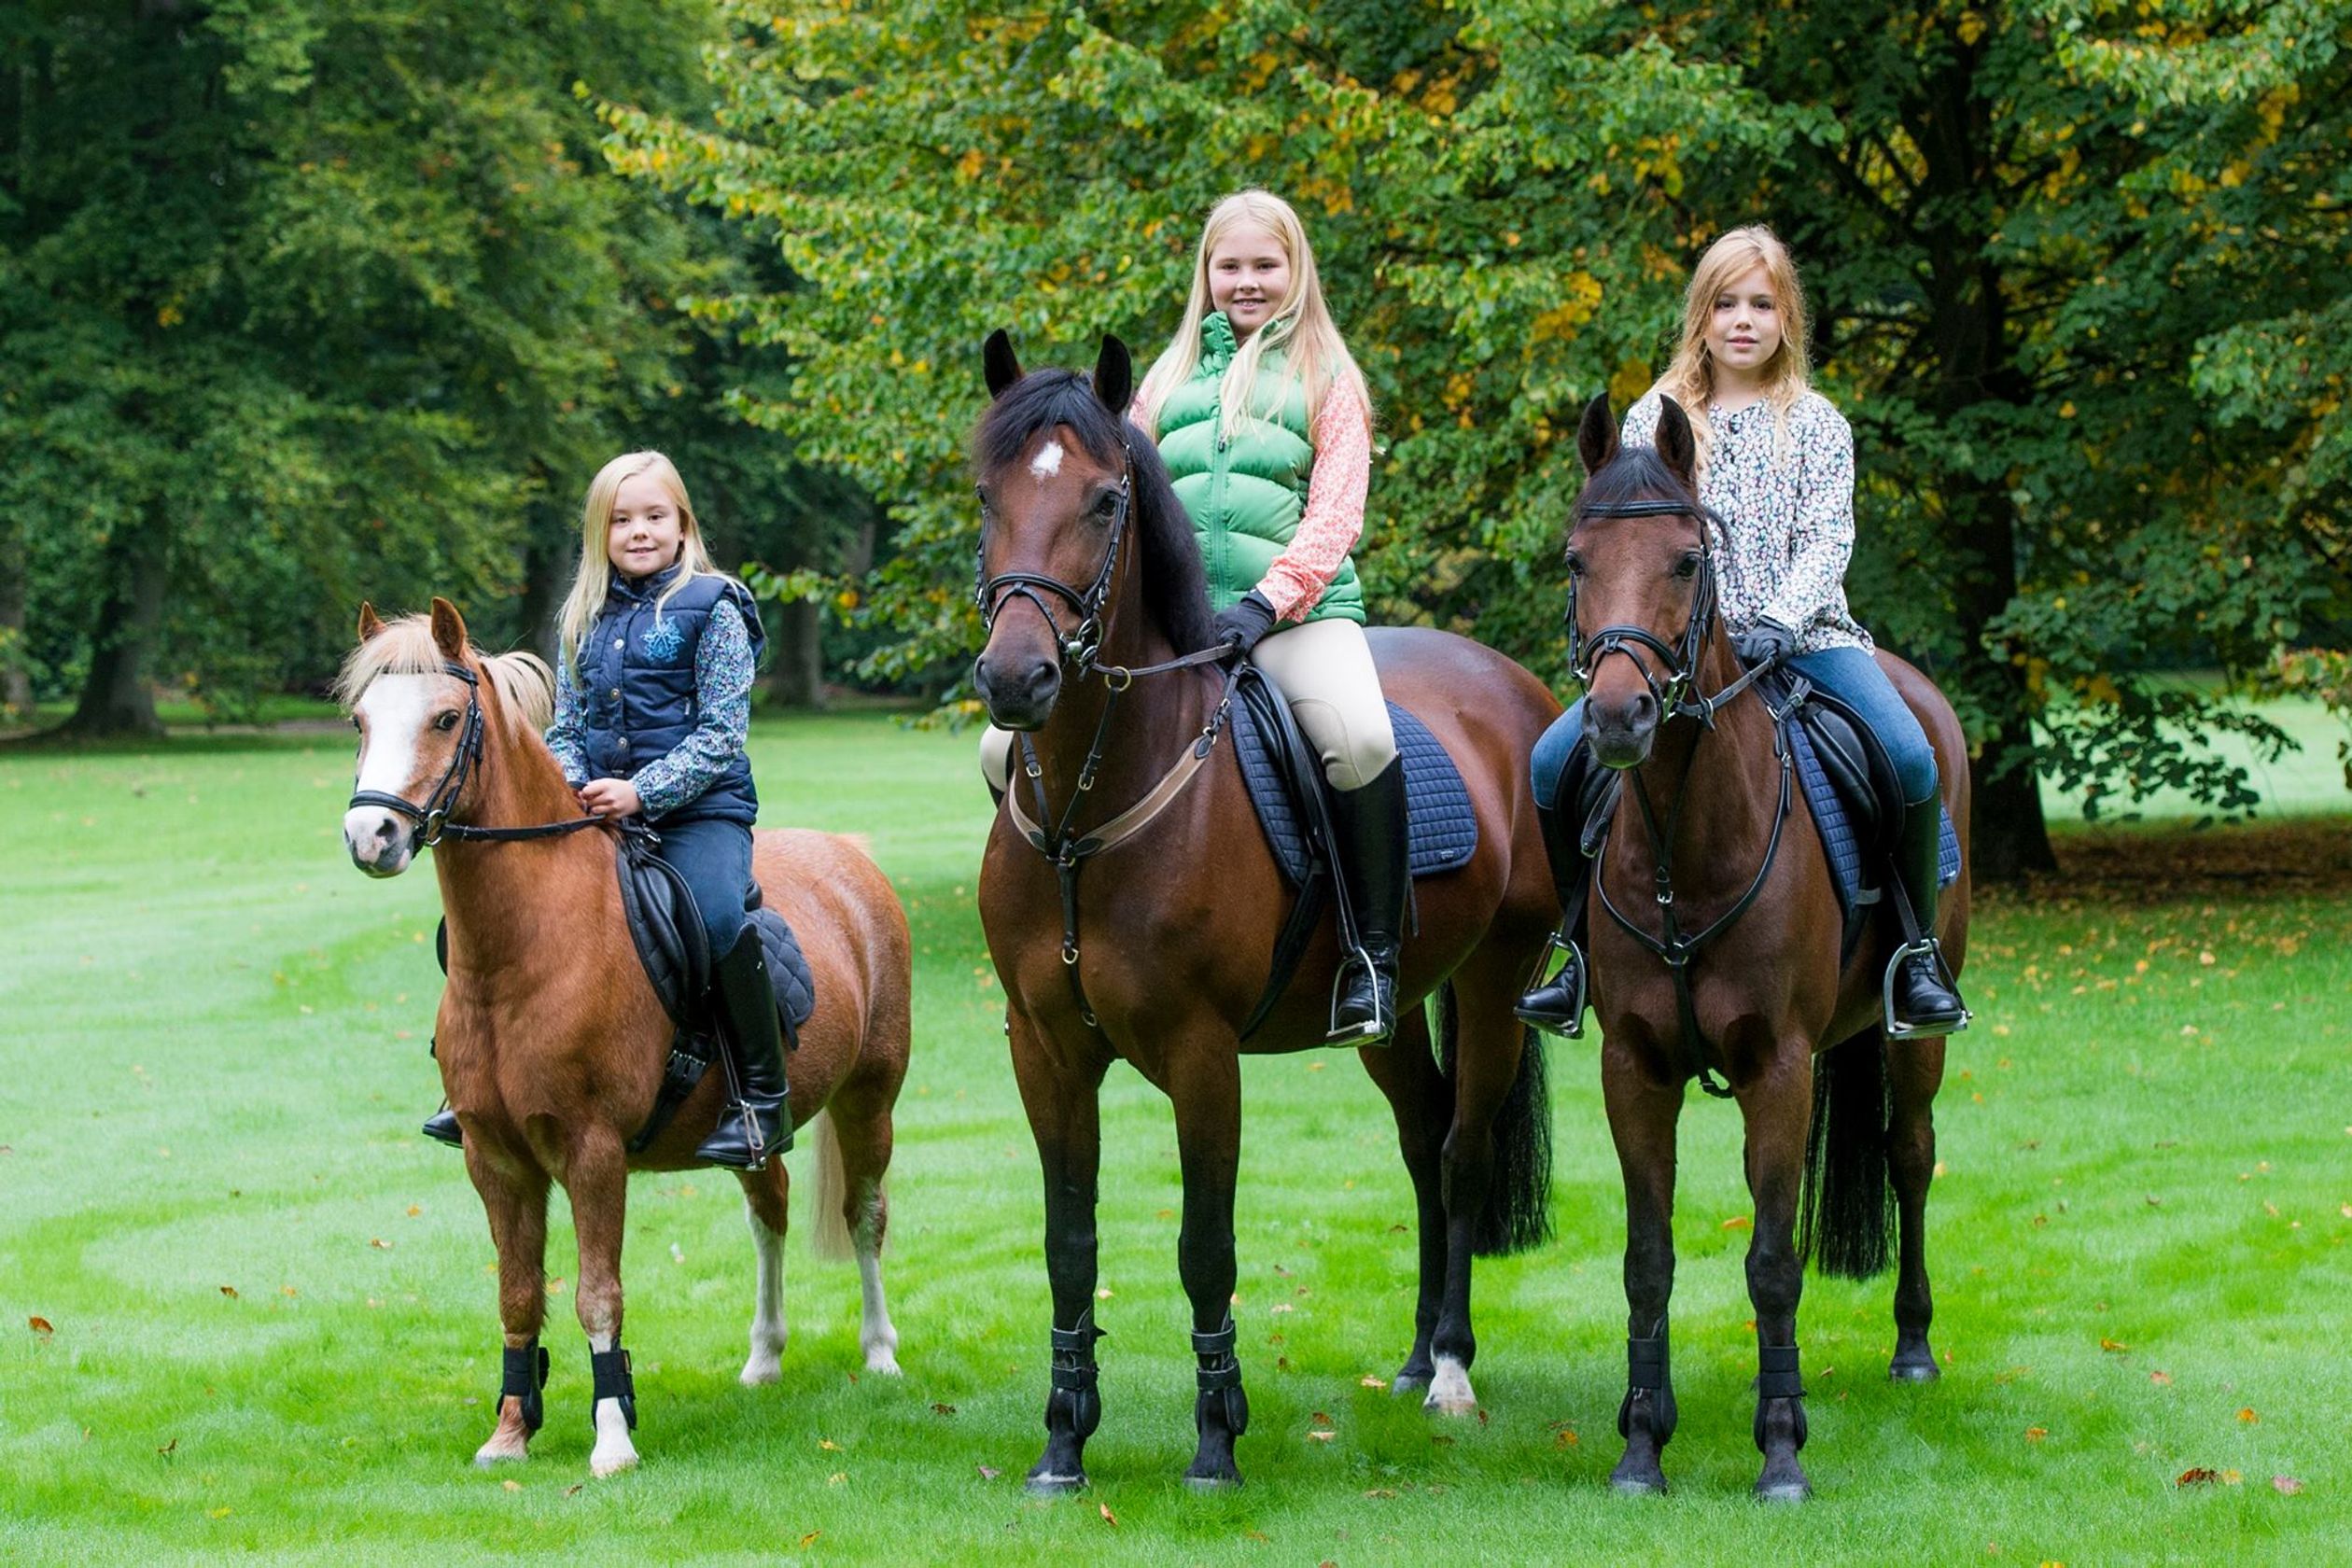 2015: Drie prinsessen te paard. Amalia doet regelmatig mee aan wedstrijden. Deze foto werd op haar